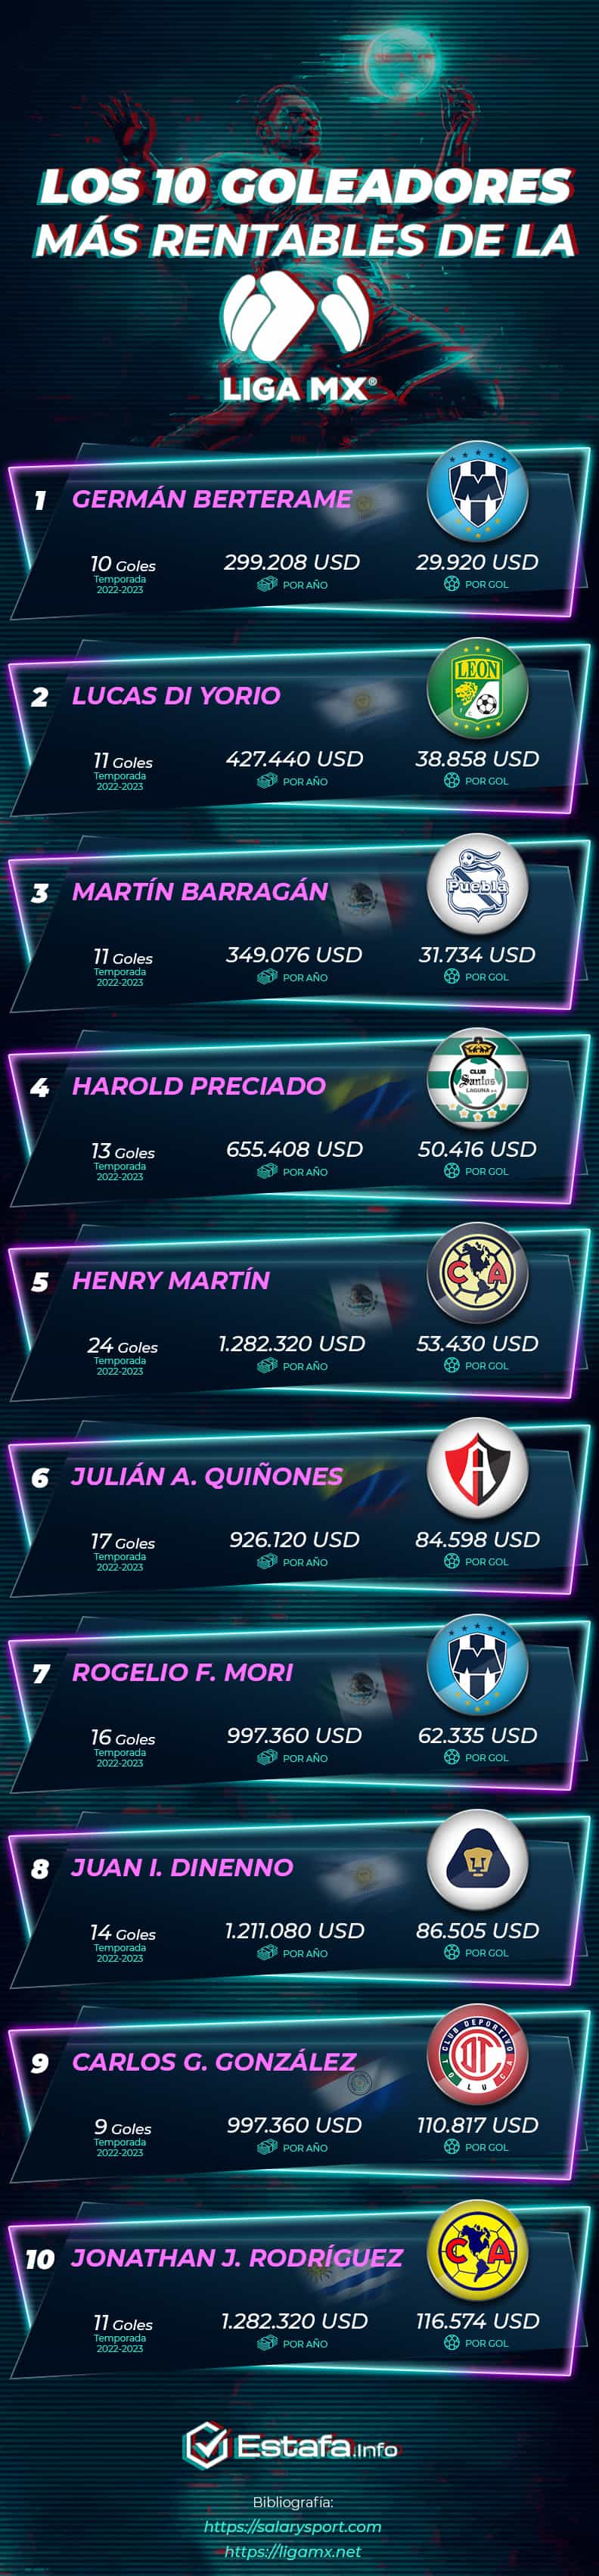 Los 10 goleadores más rentables de la Liga MX